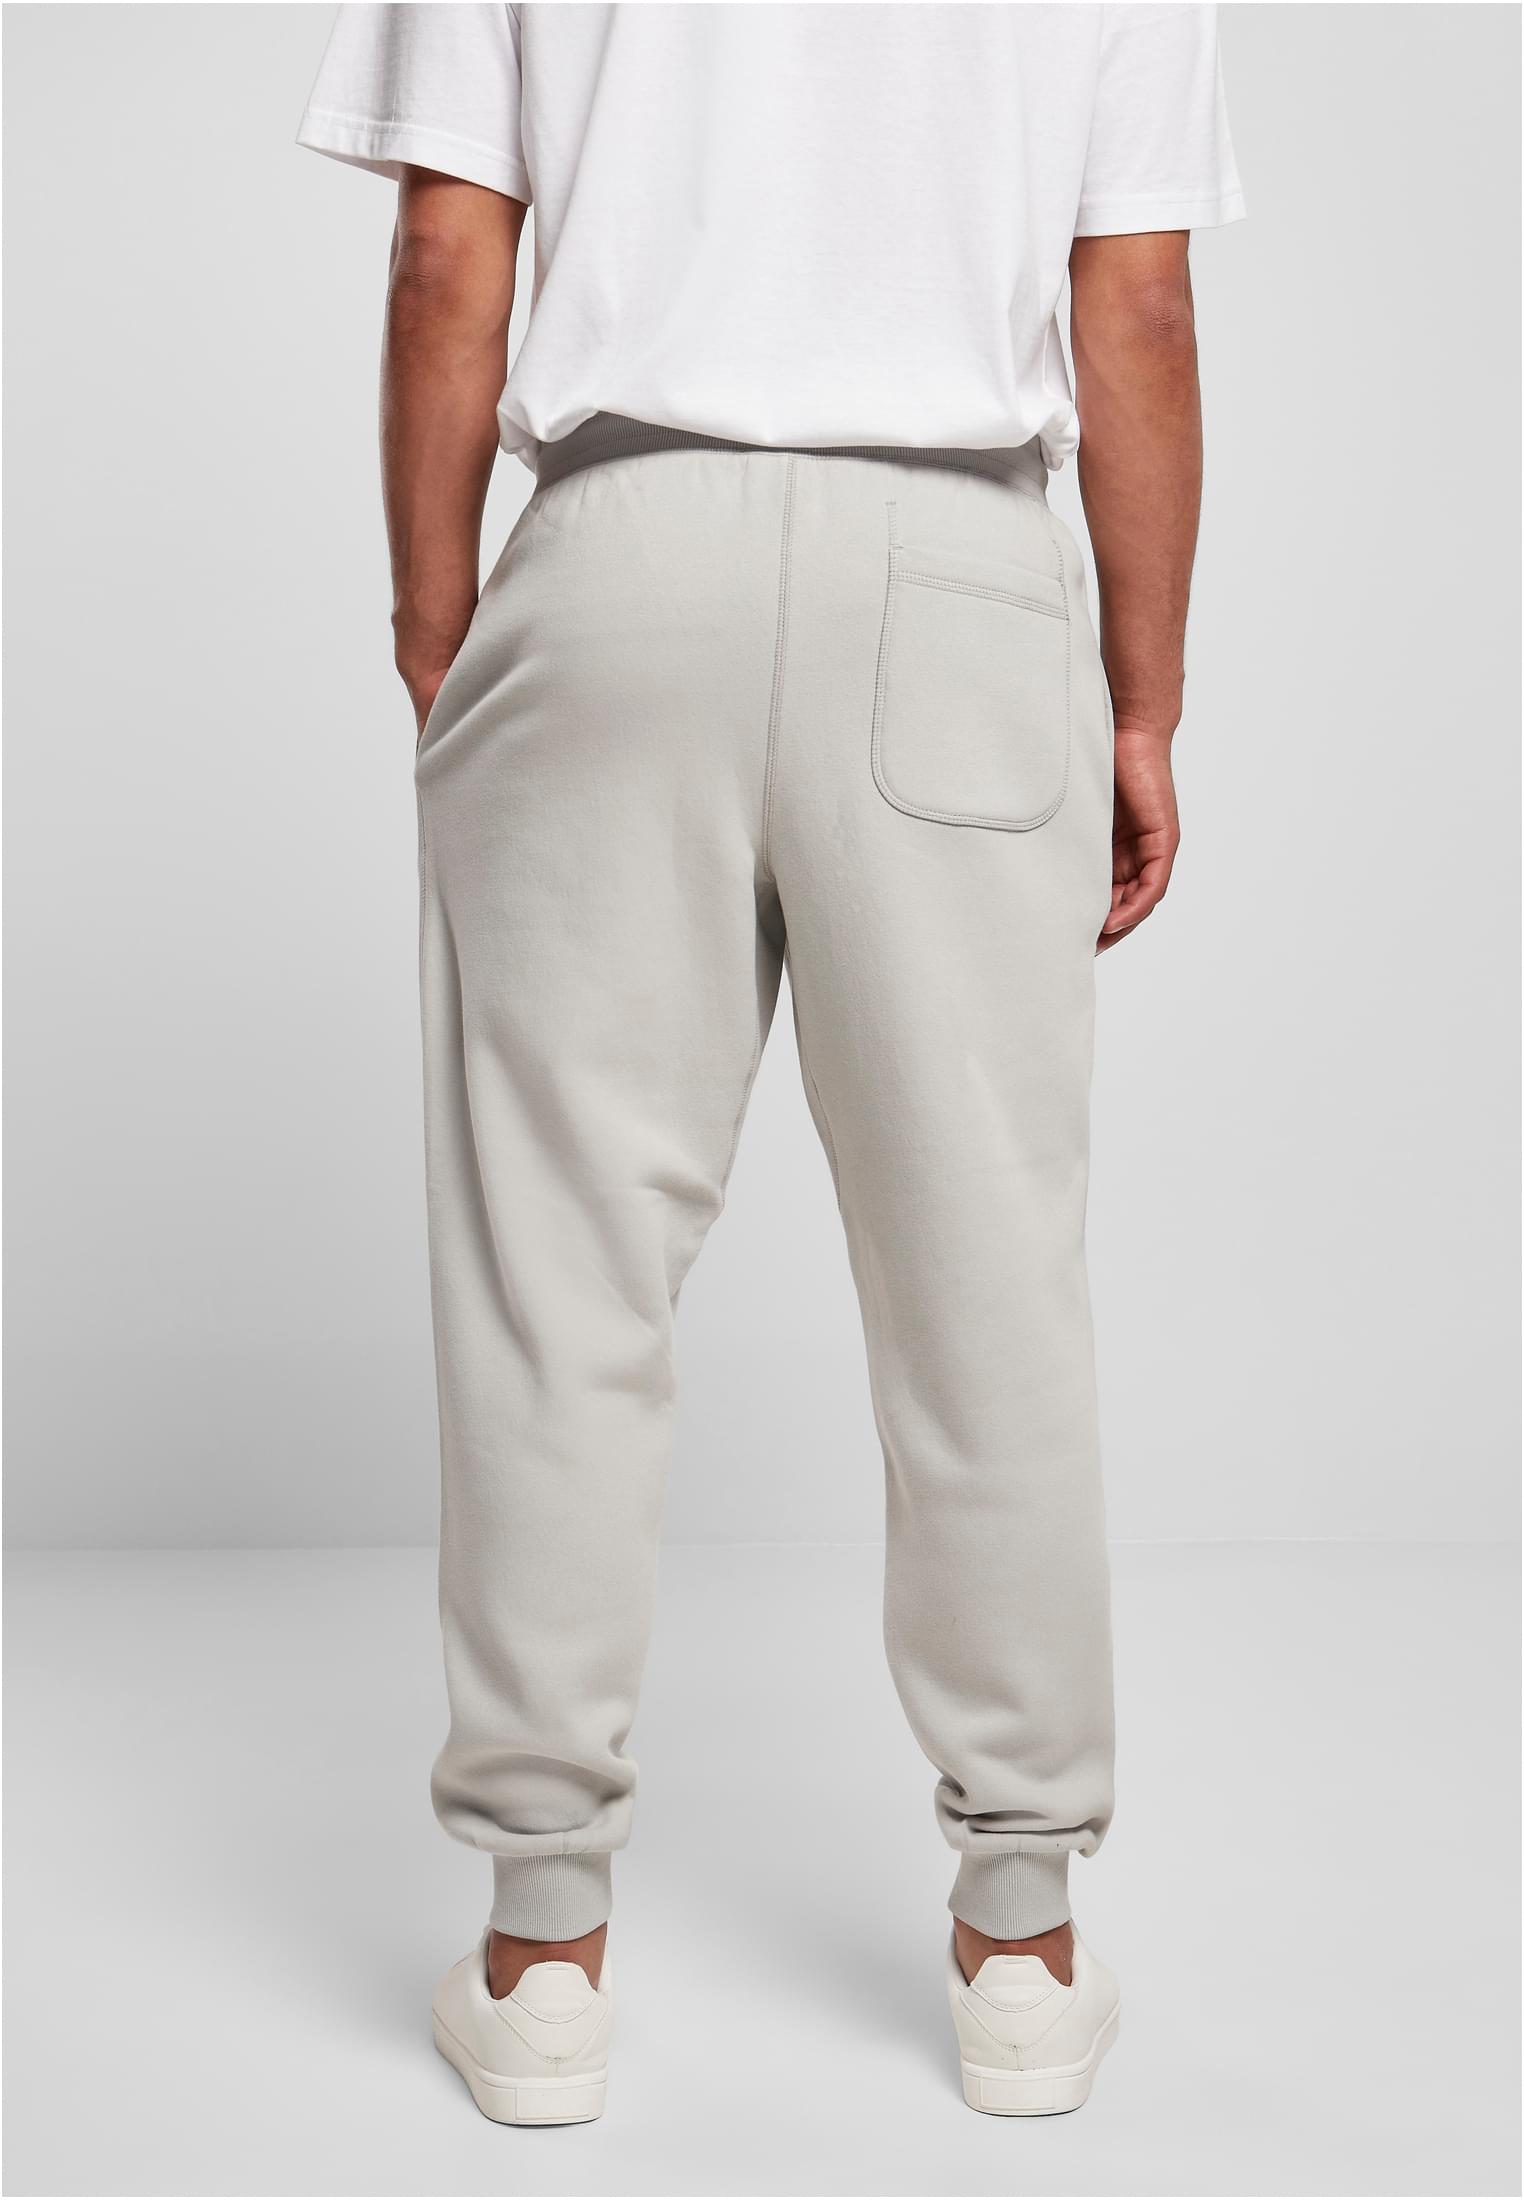 Herren Basic Sweatpants in Farbe lightasphalt